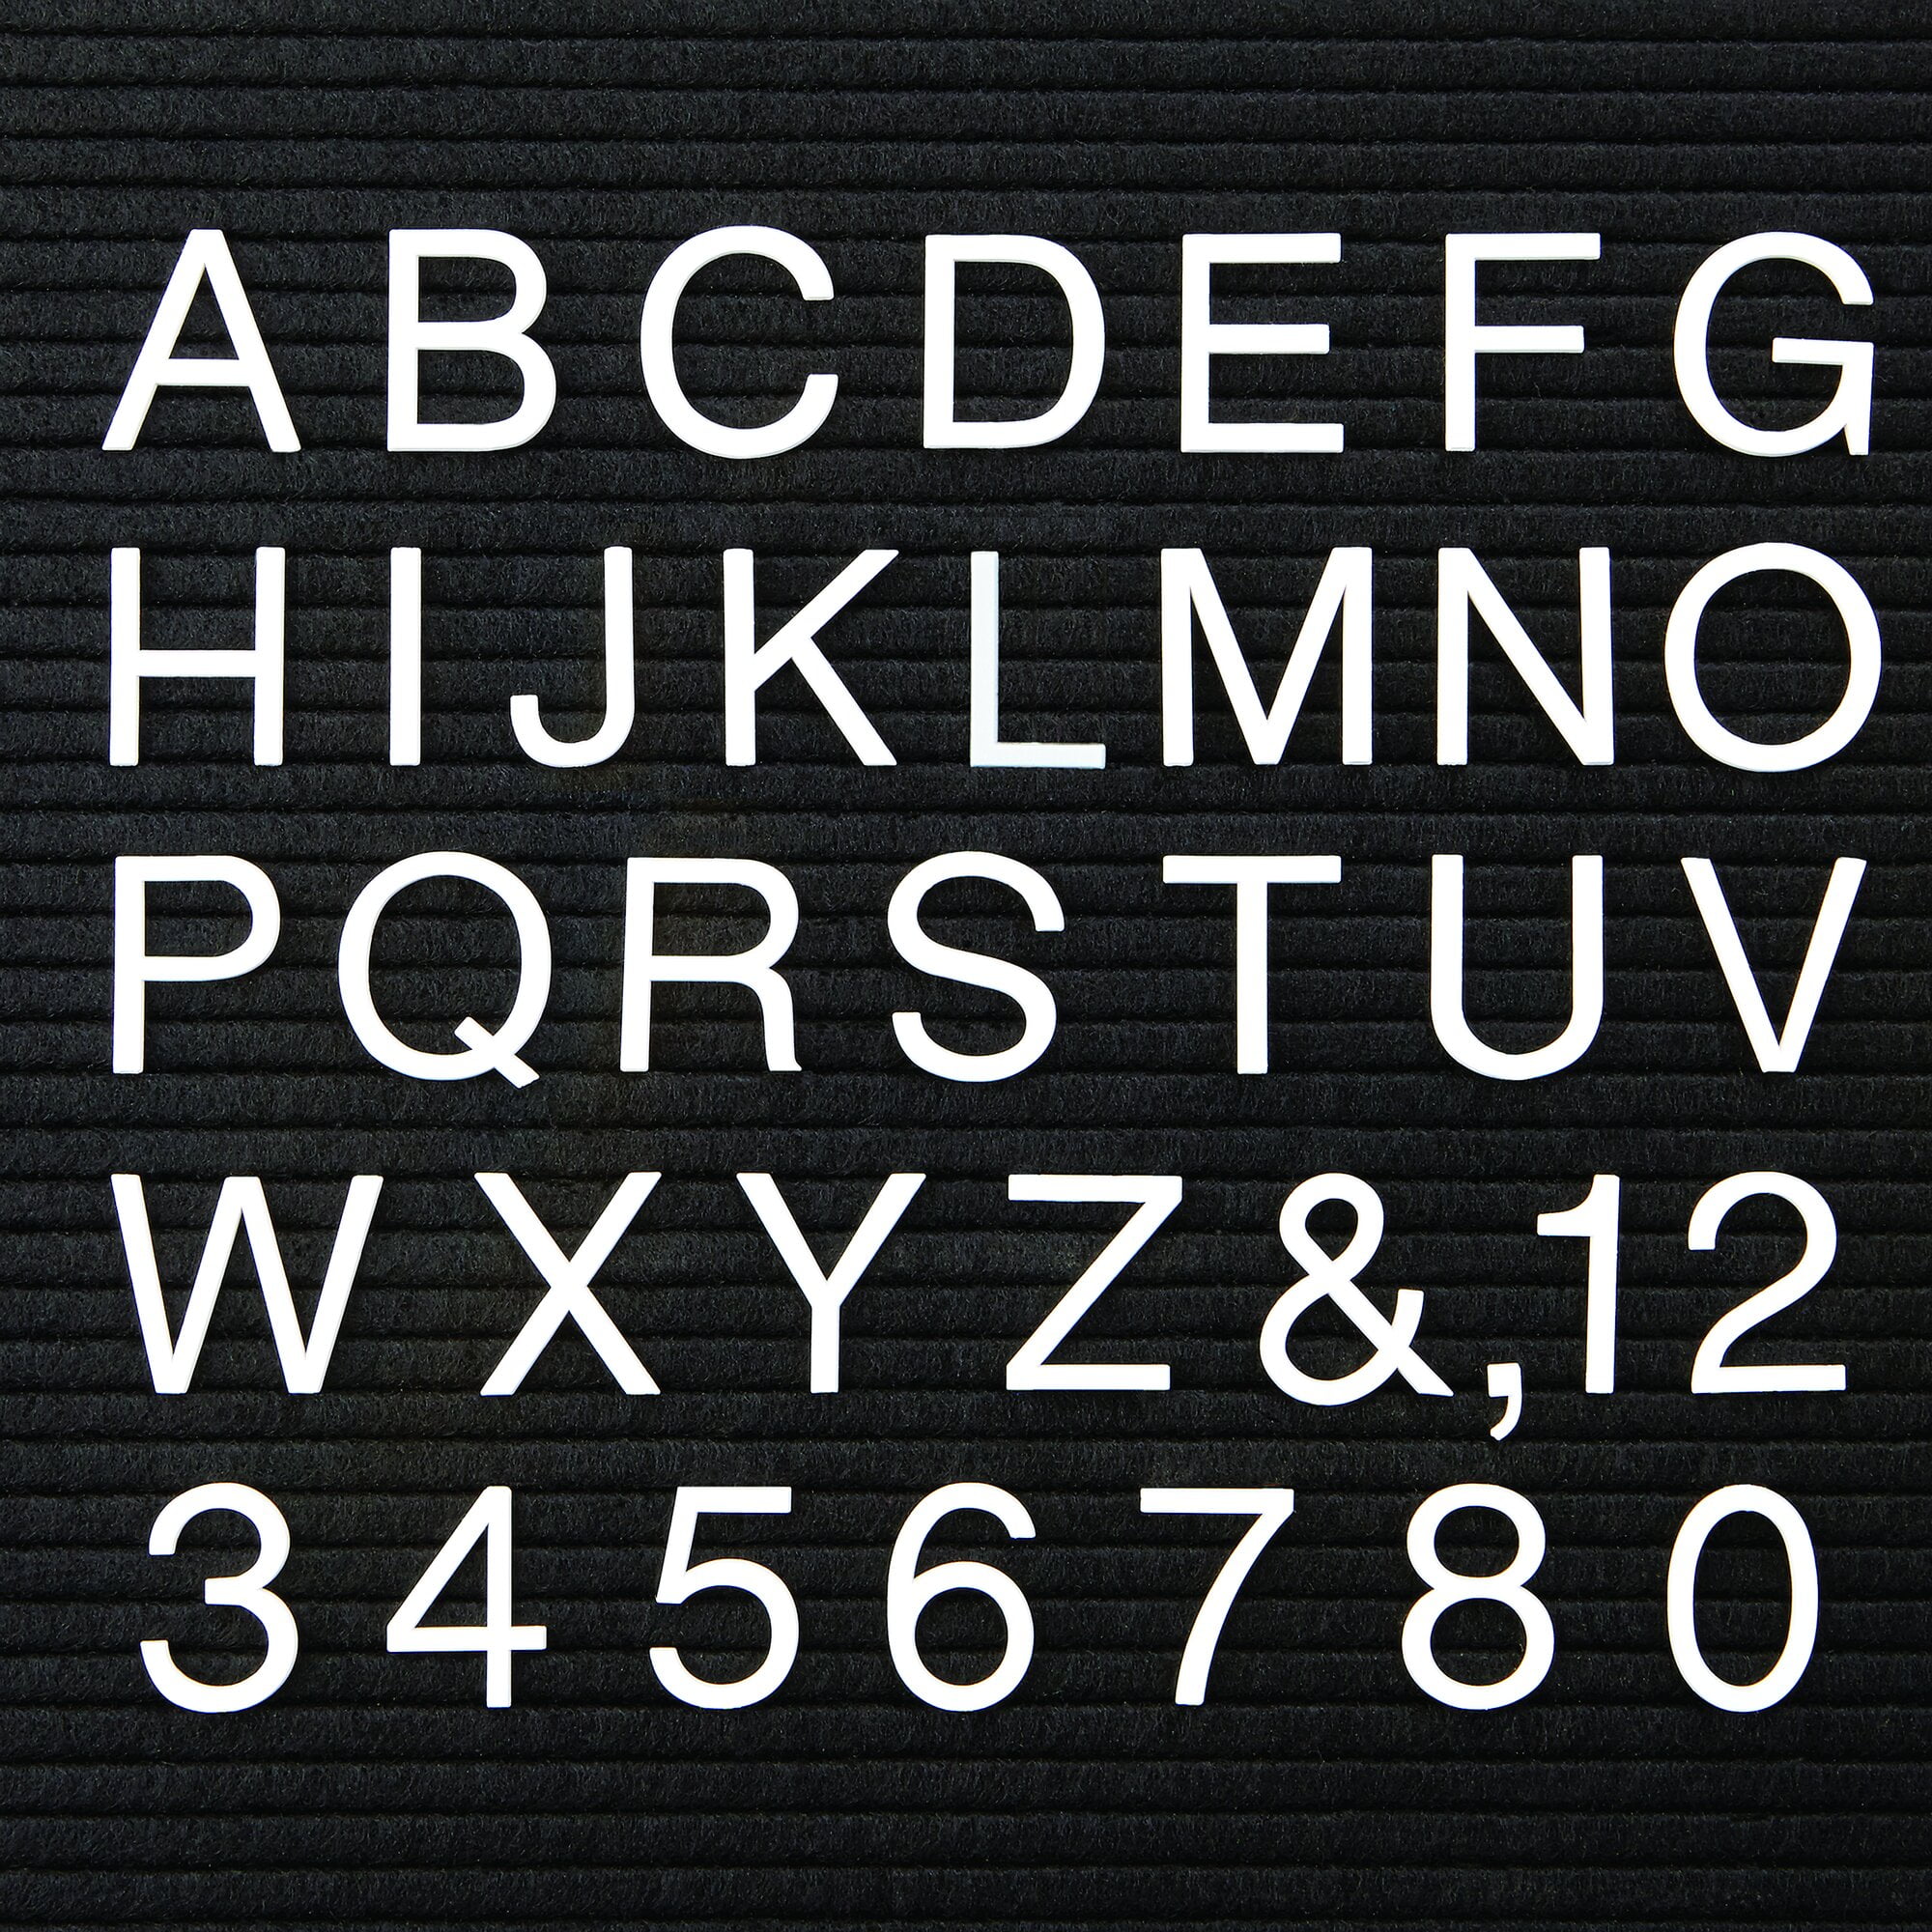 Coca-Cola 3/4" Black Menu Board Letters & Numbers Symbols set! 